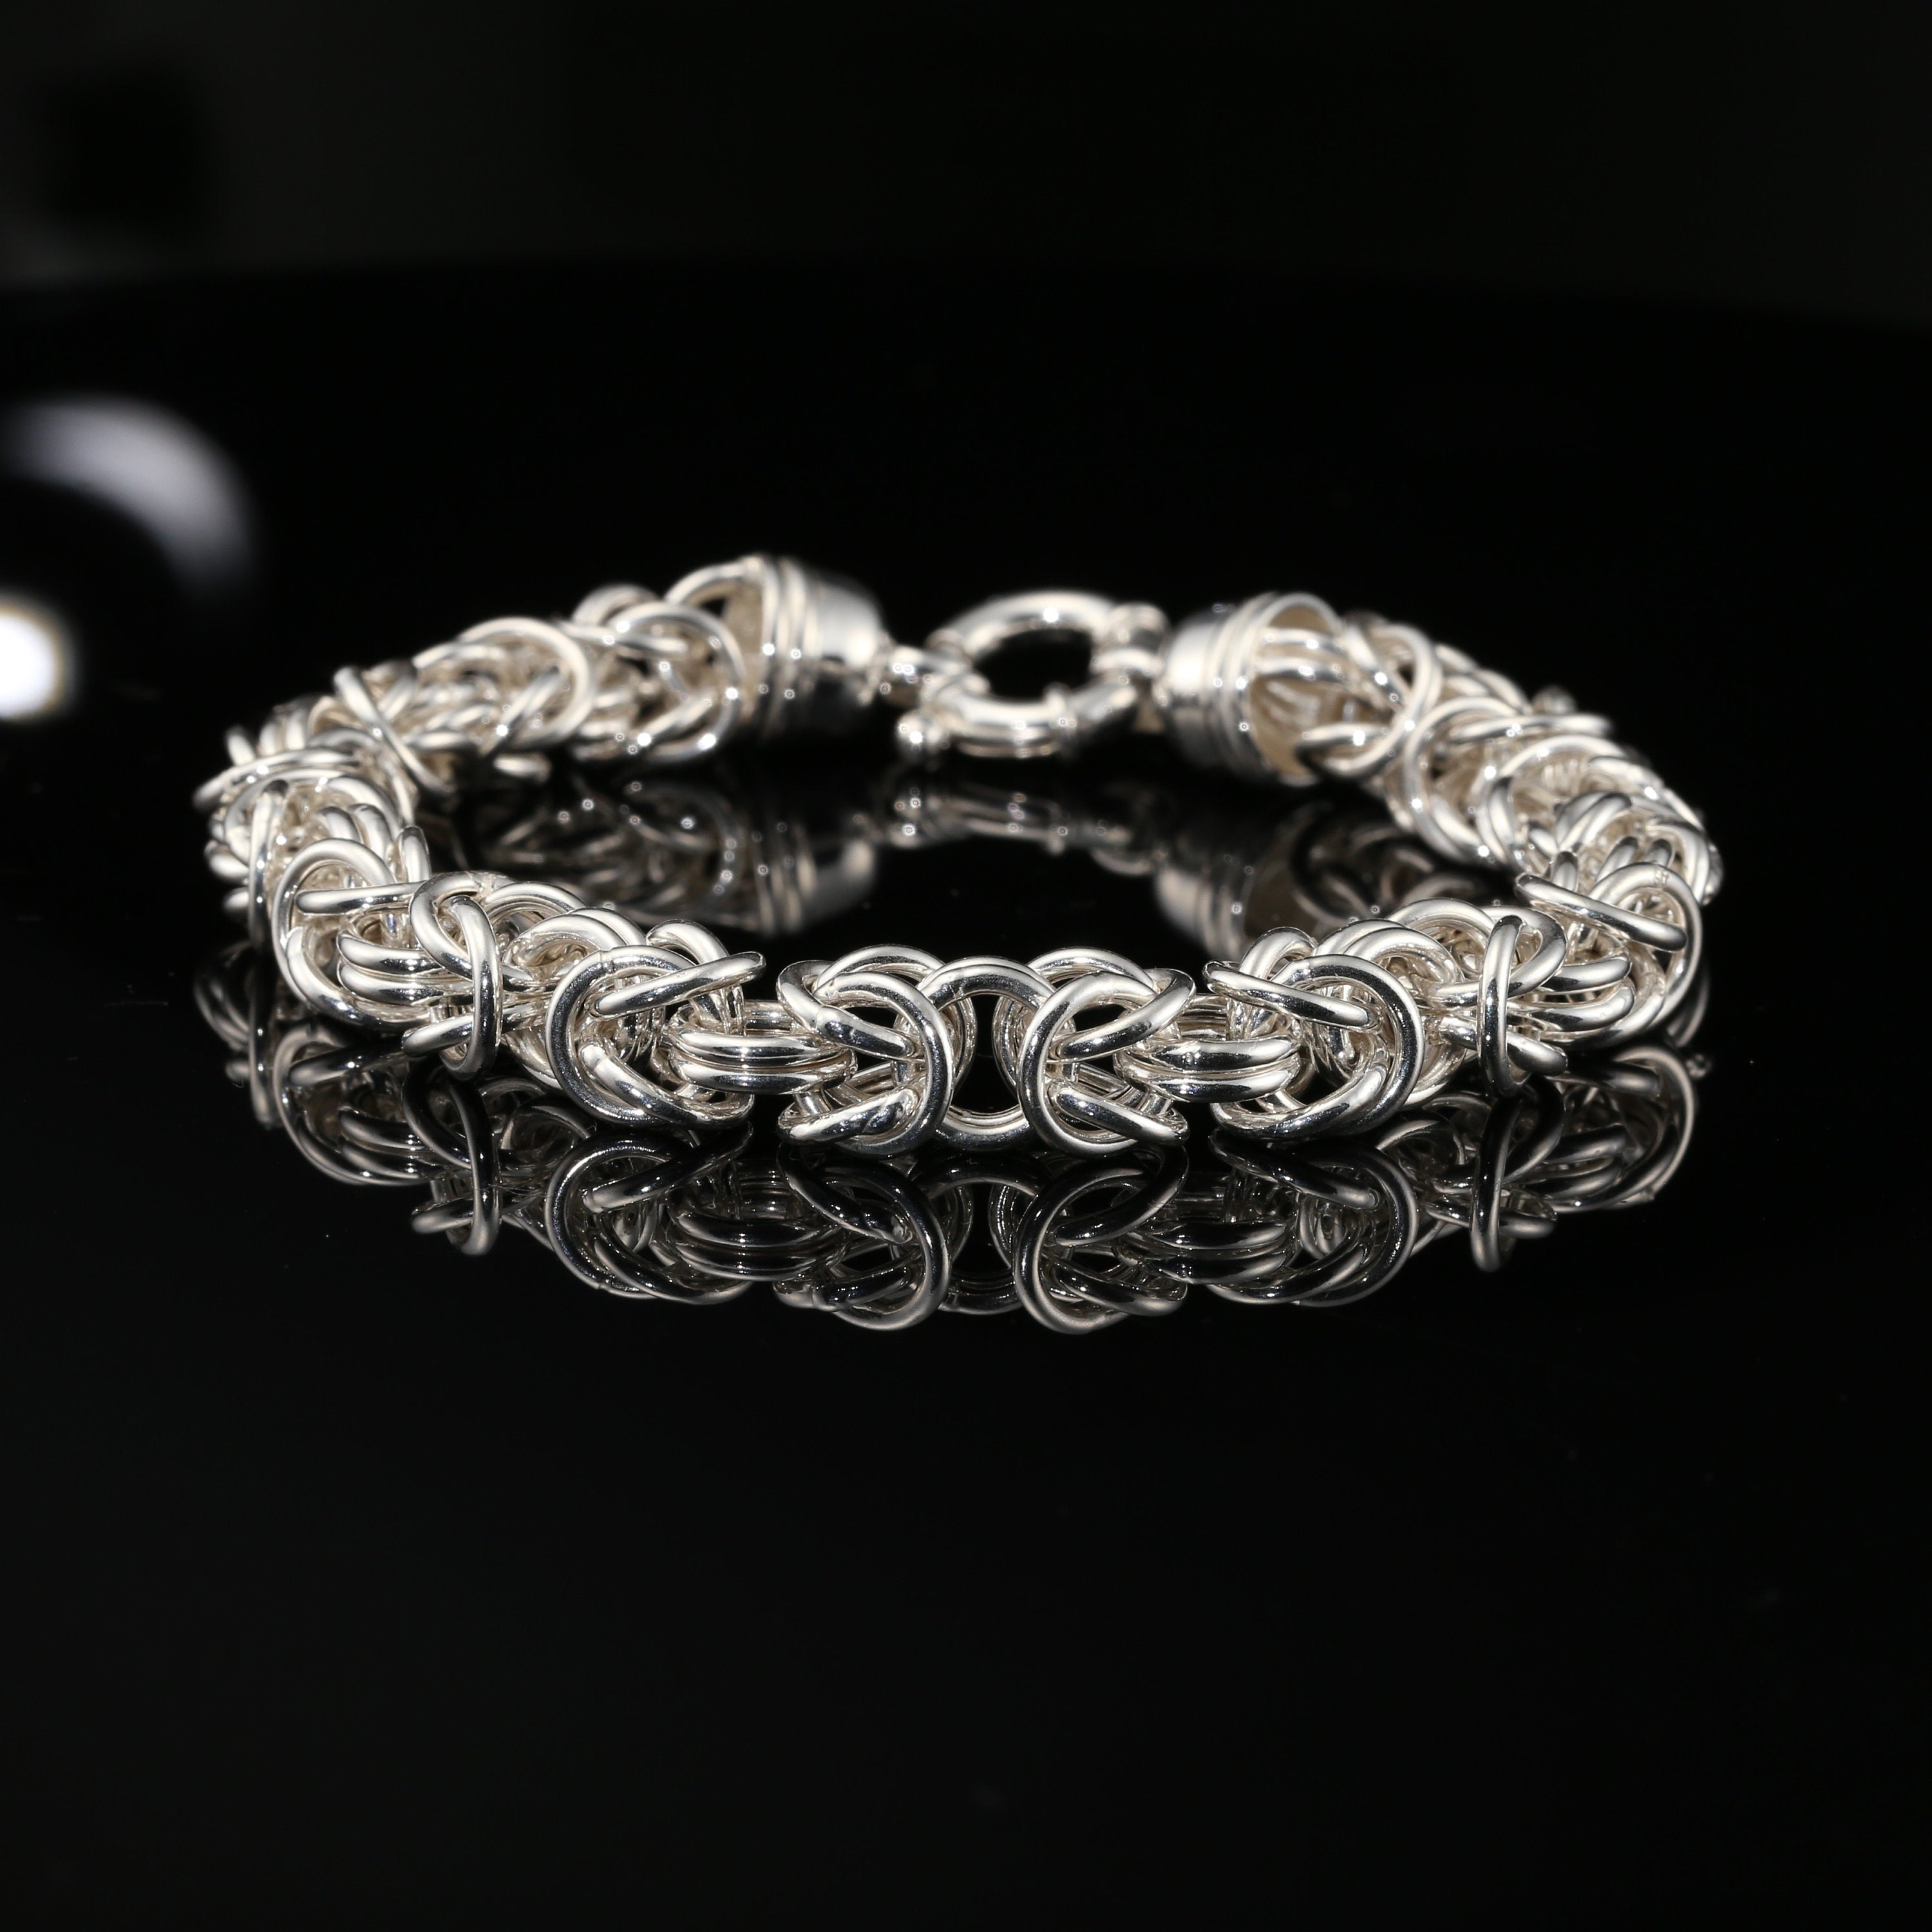 chainmail bracelet byzantine